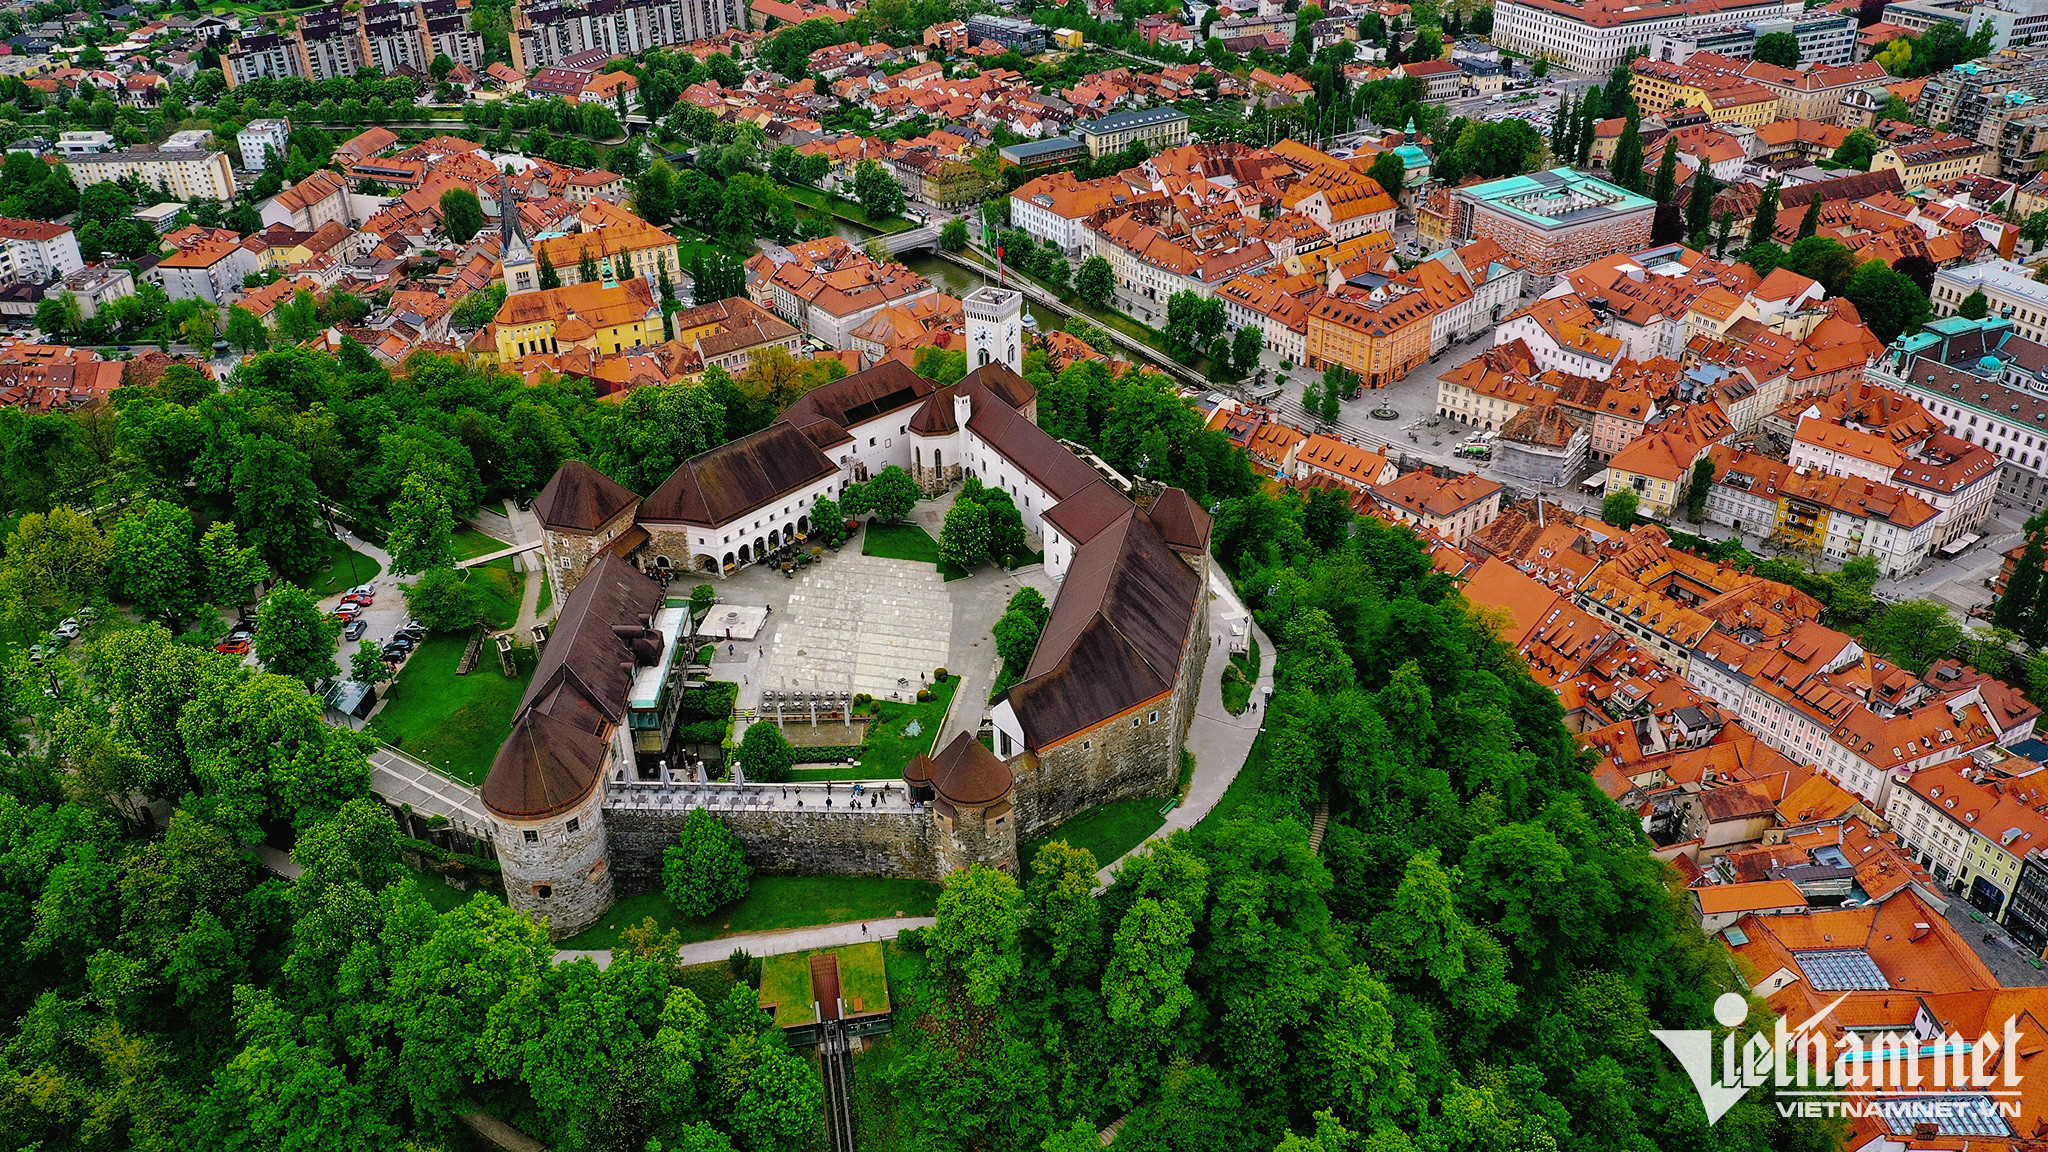 Mê mẩn với cảnh sắc thị trấn cổ Bled ở Slovenia - 3